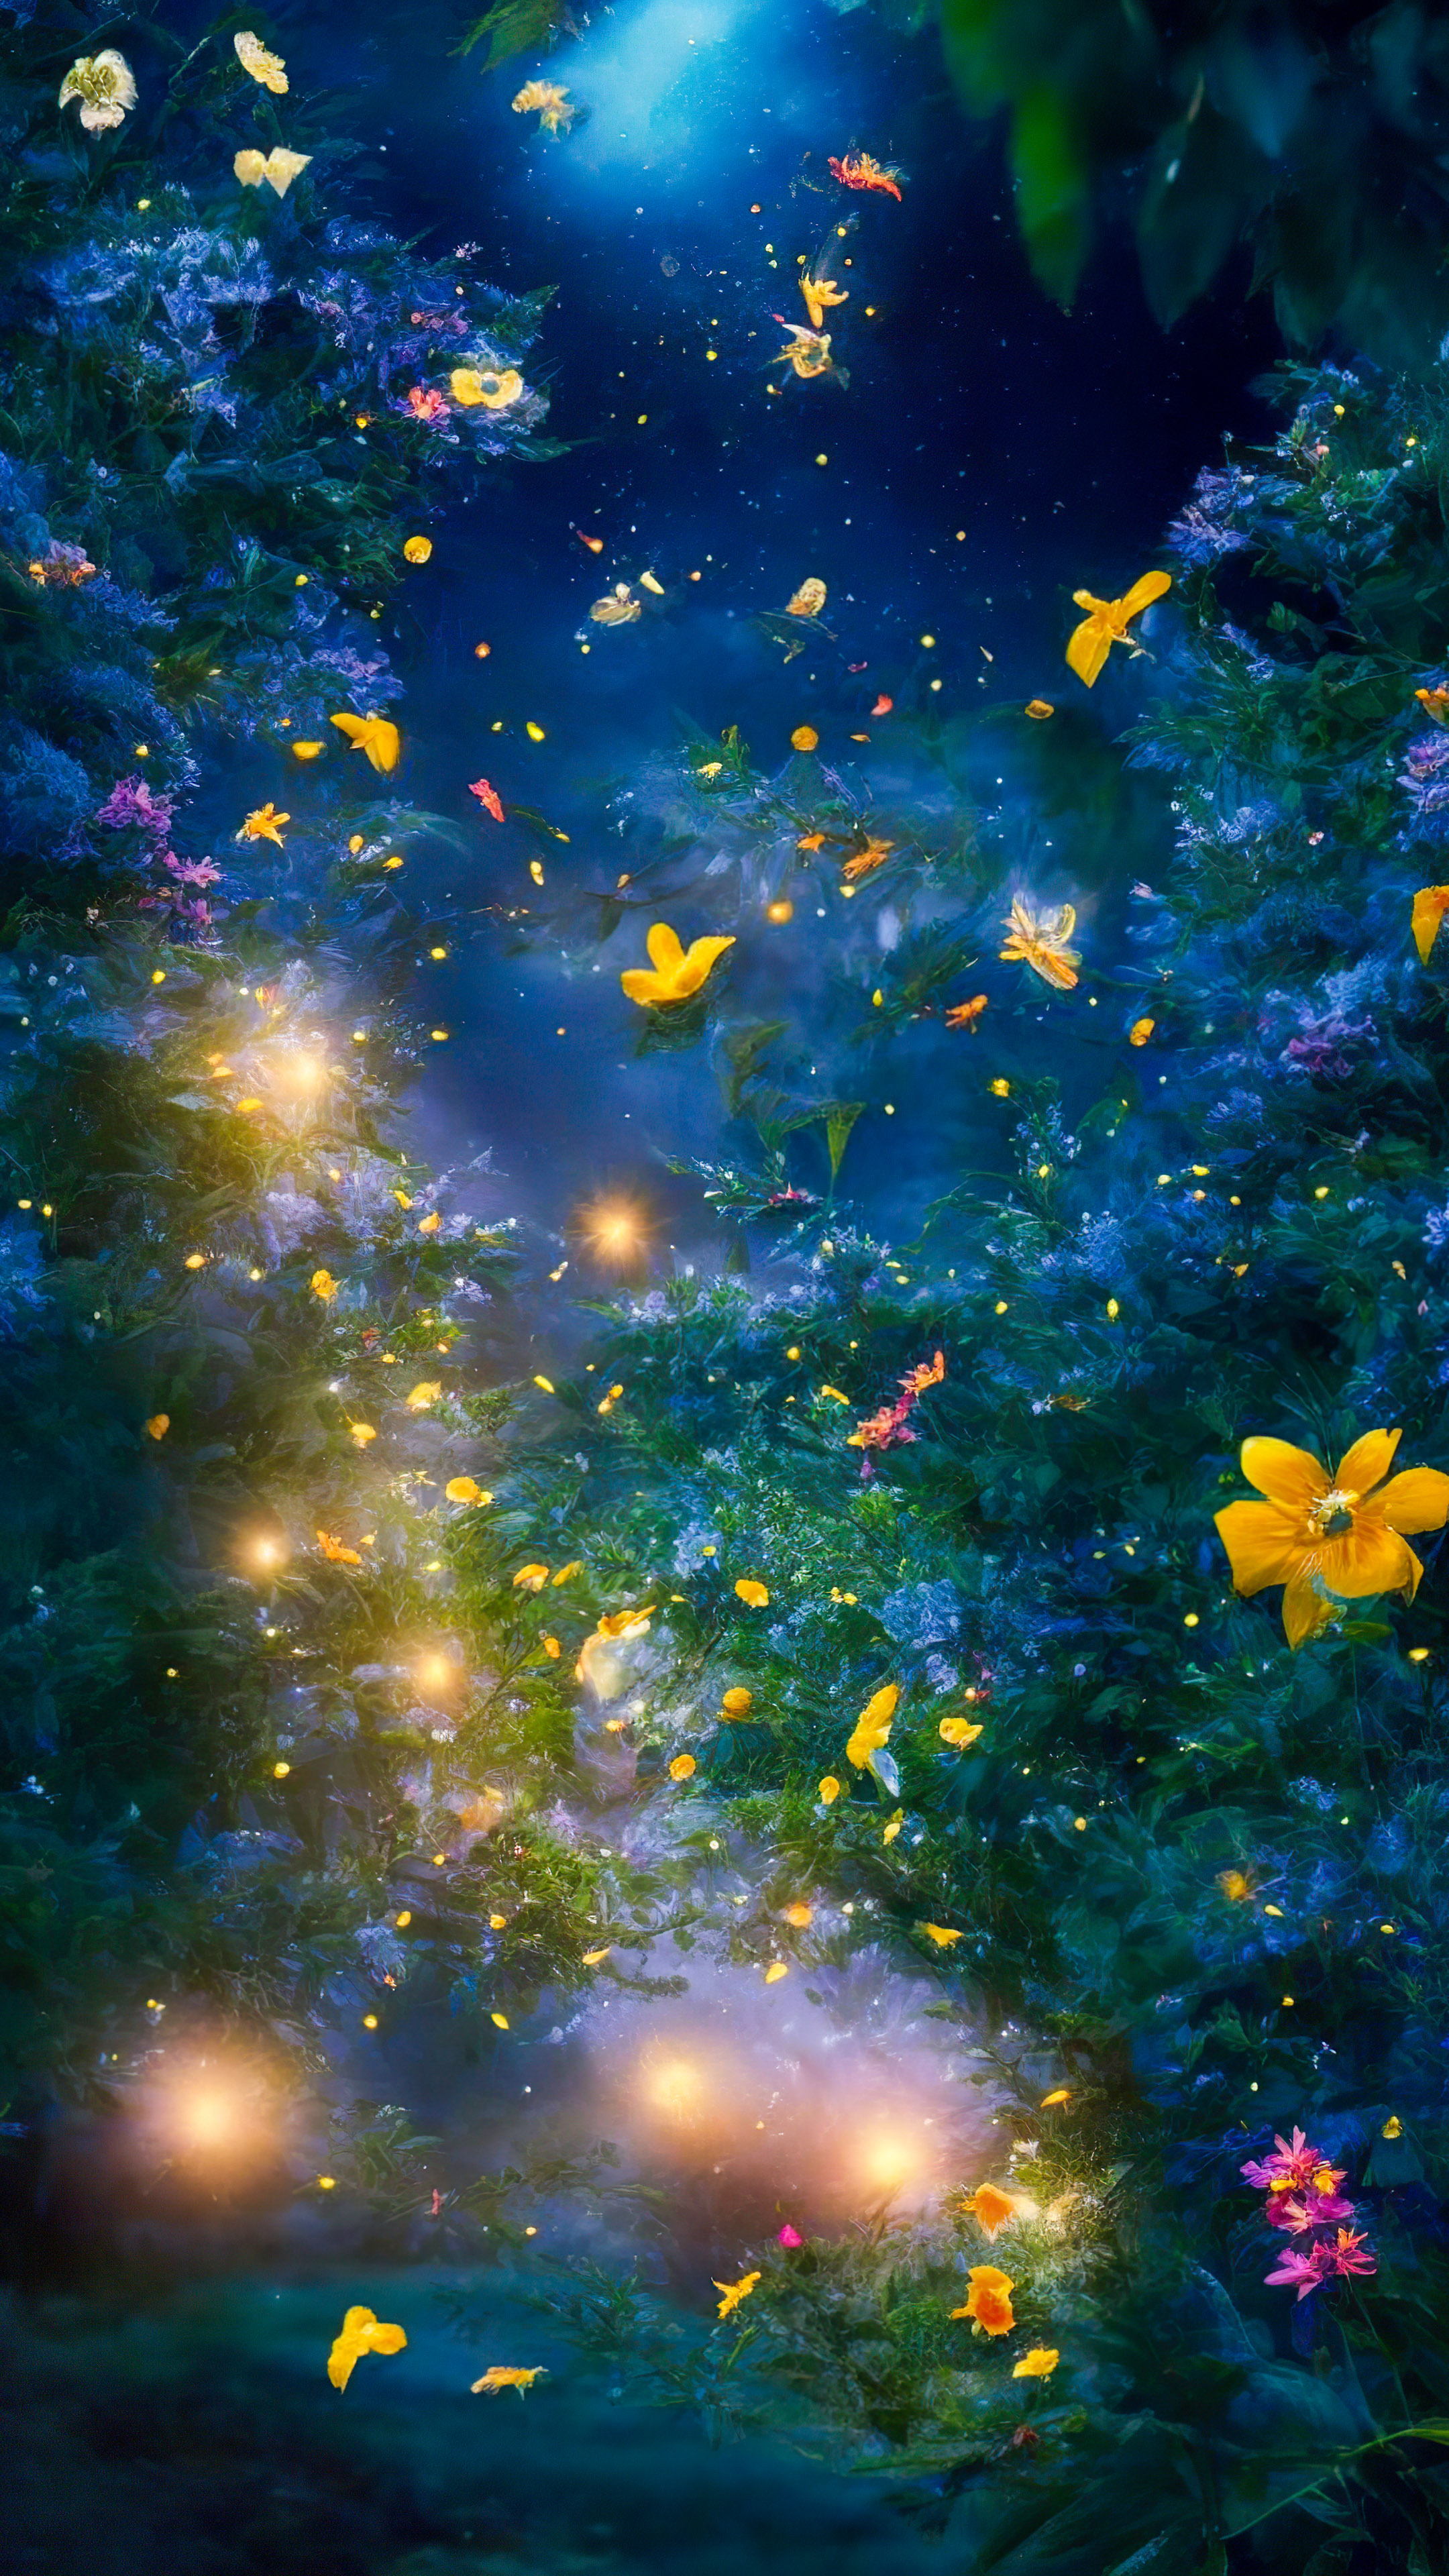 Vivez la fantaisie de notre fond d'écran de ciel nocturne esthétique, présentant un jardin magique et capricieux la nuit, où les lucioles dansent autour de fleurs lumineuses et vibrantes.